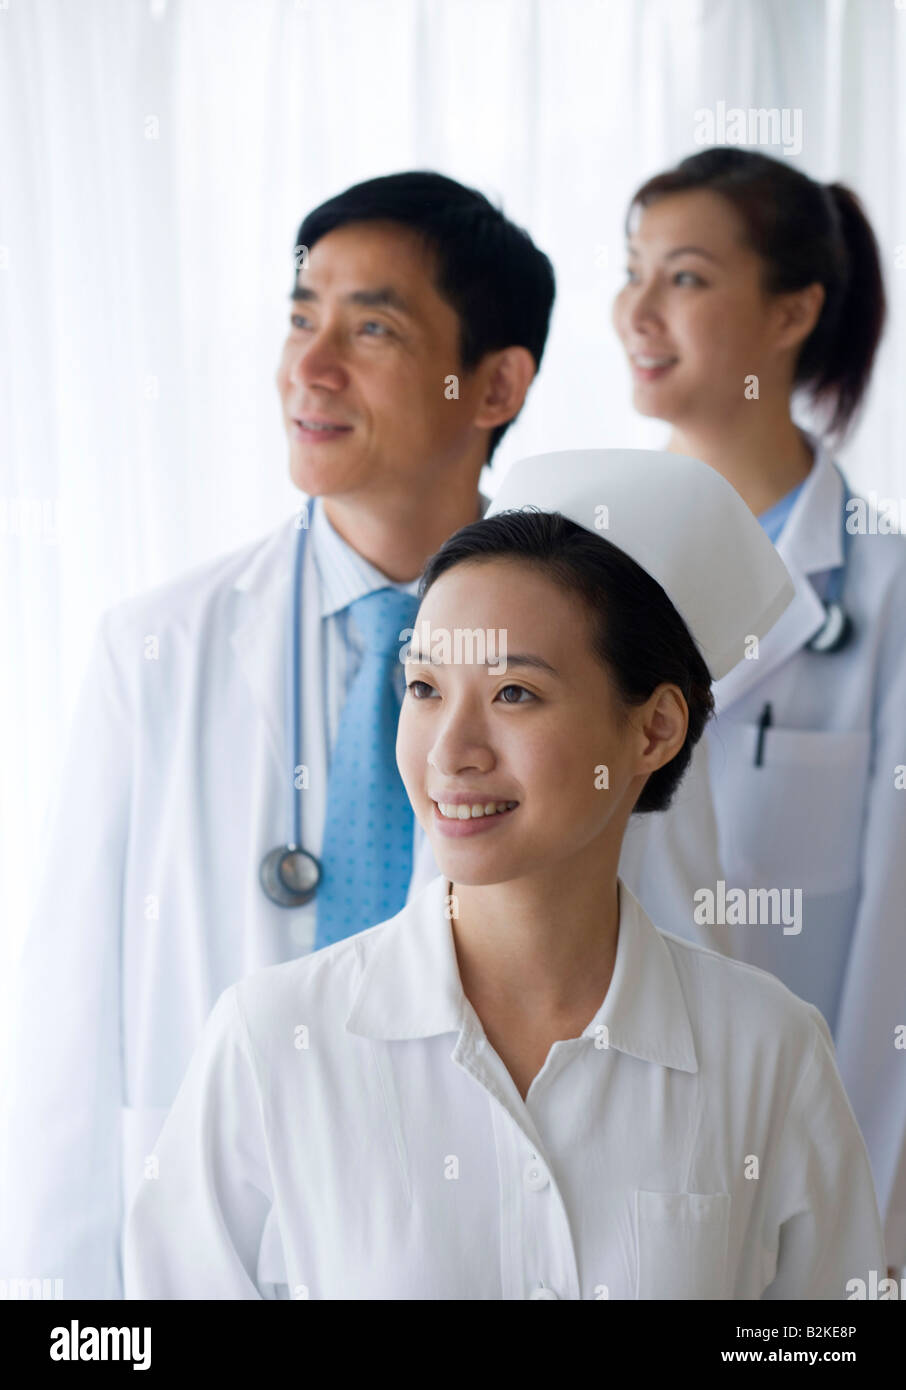 Nurse smiling avec deux médecins debout derrière elle Banque D'Images